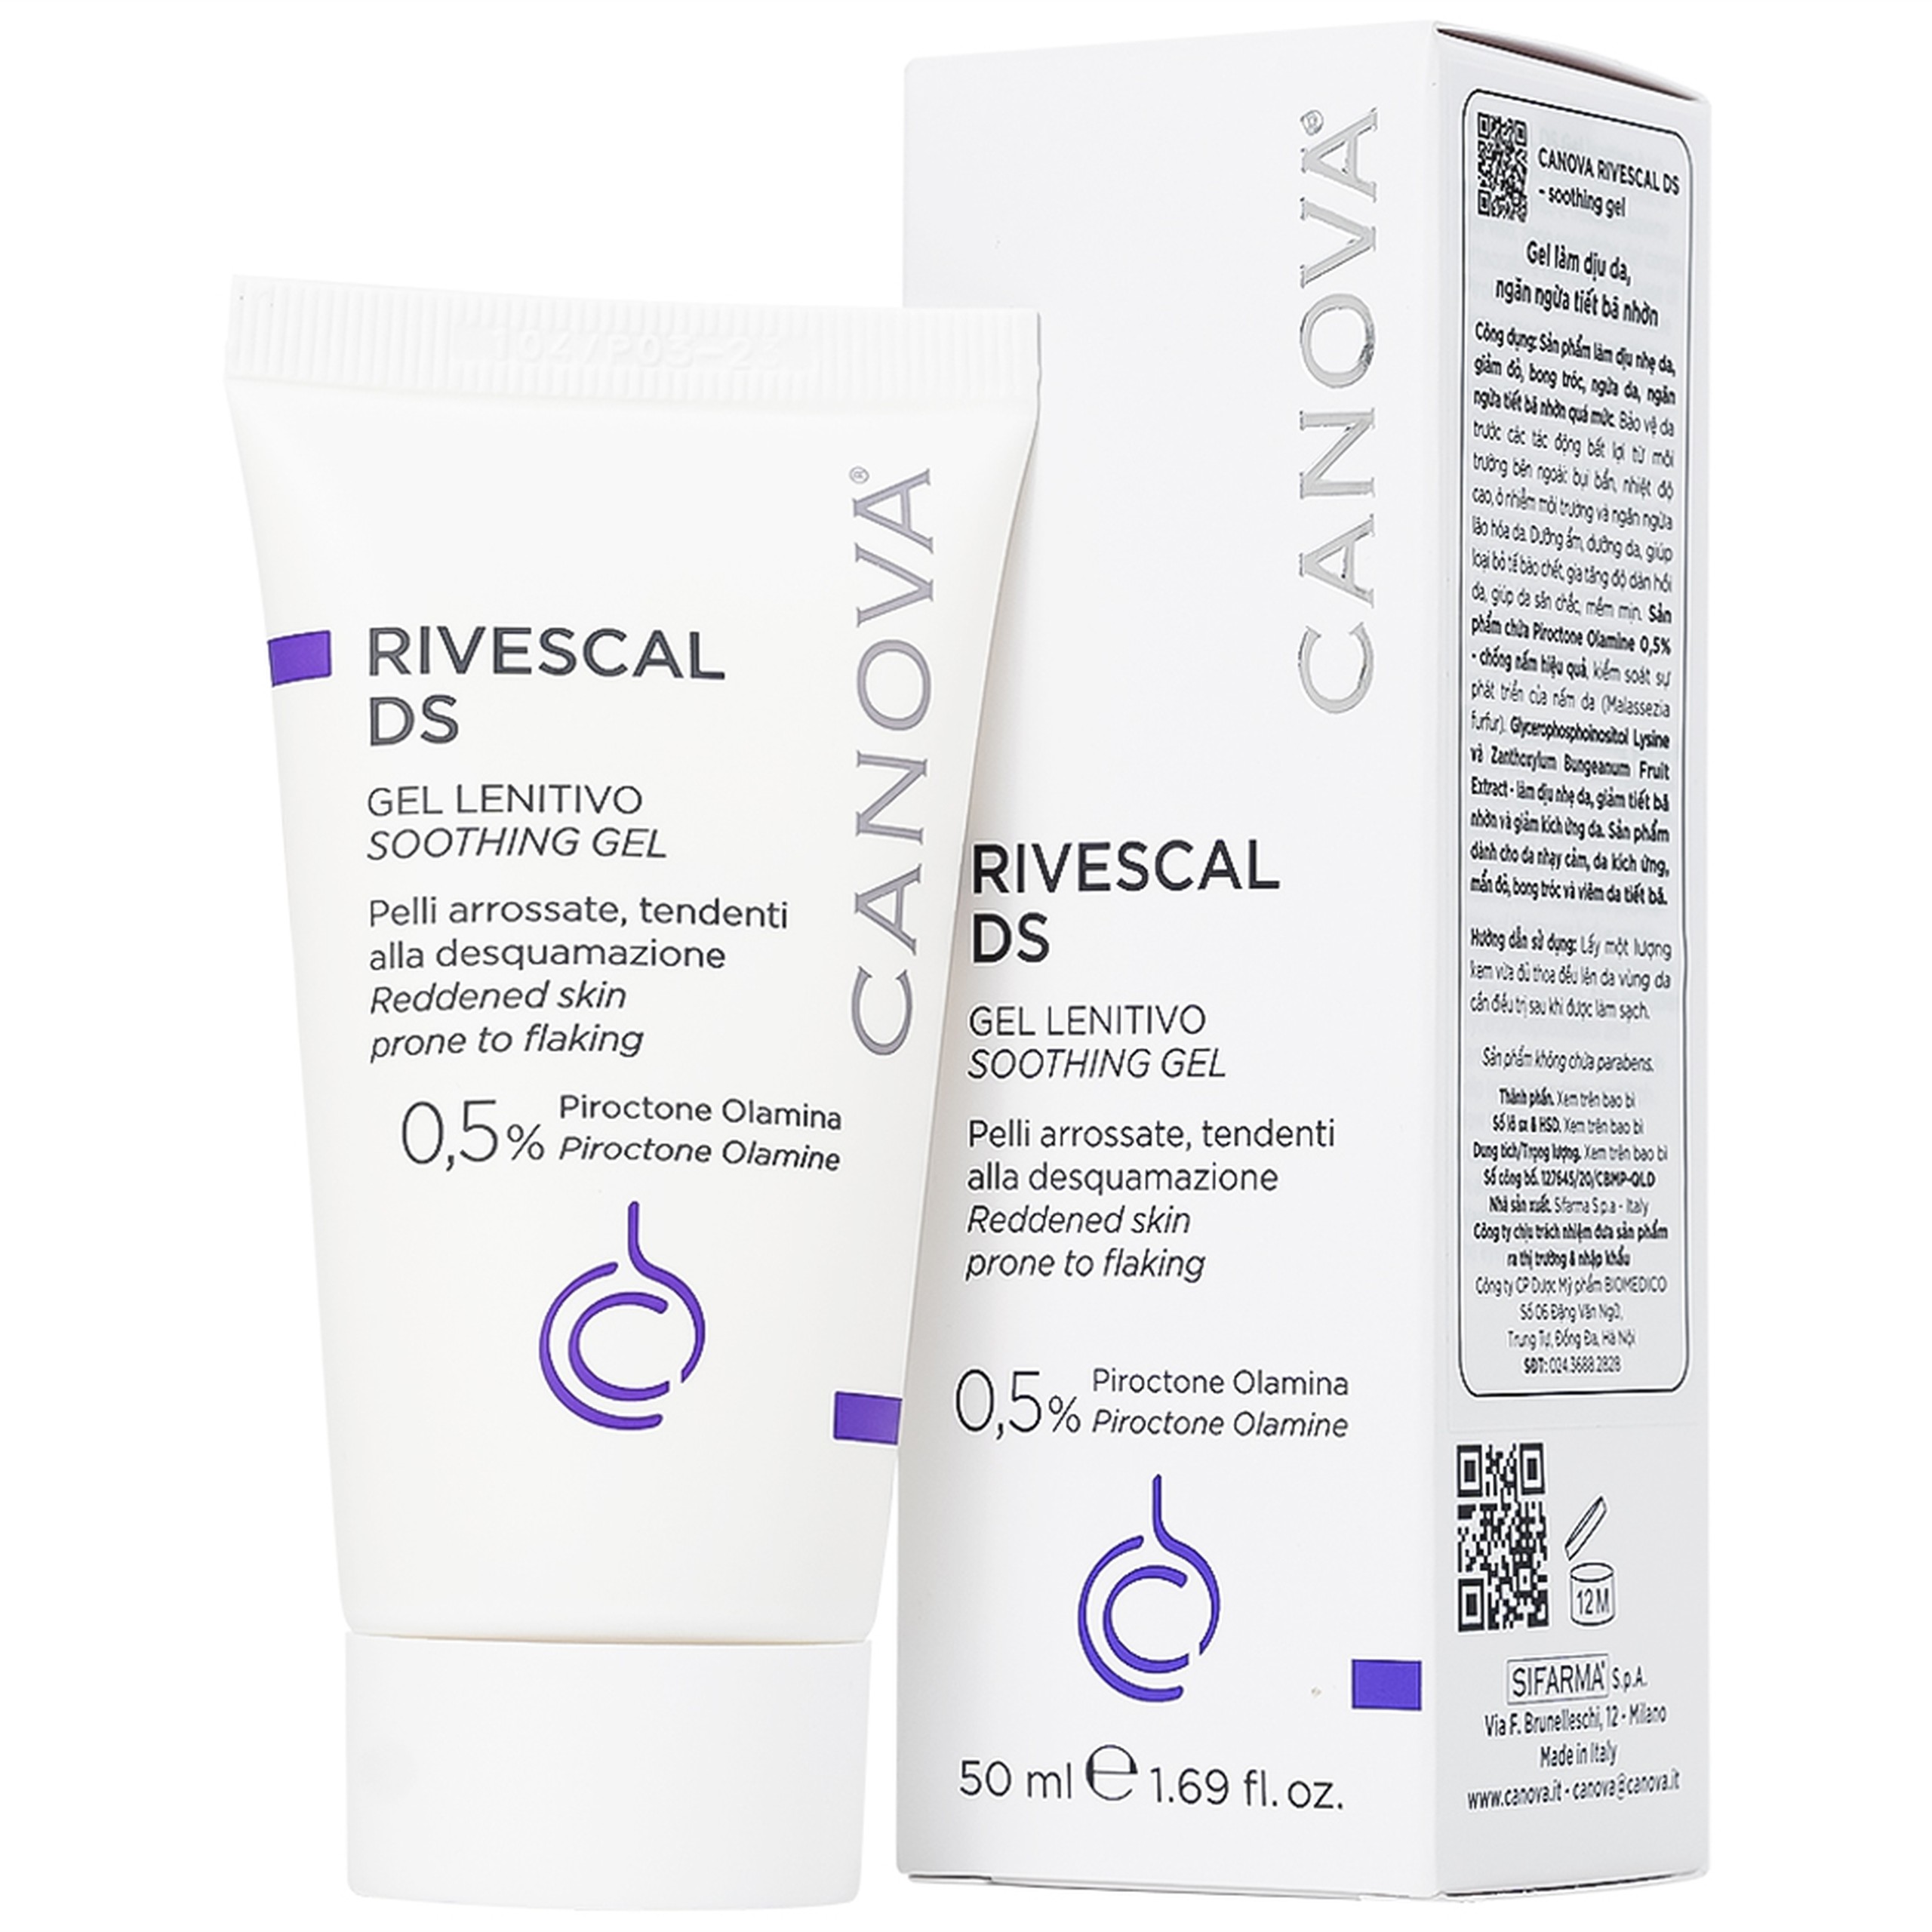 Gel Canova Rivescal DS Soothing gel Siflarma làm dịu da, ngăn ngừa tiết bã nhờn, giảm ngứa da (50ml)